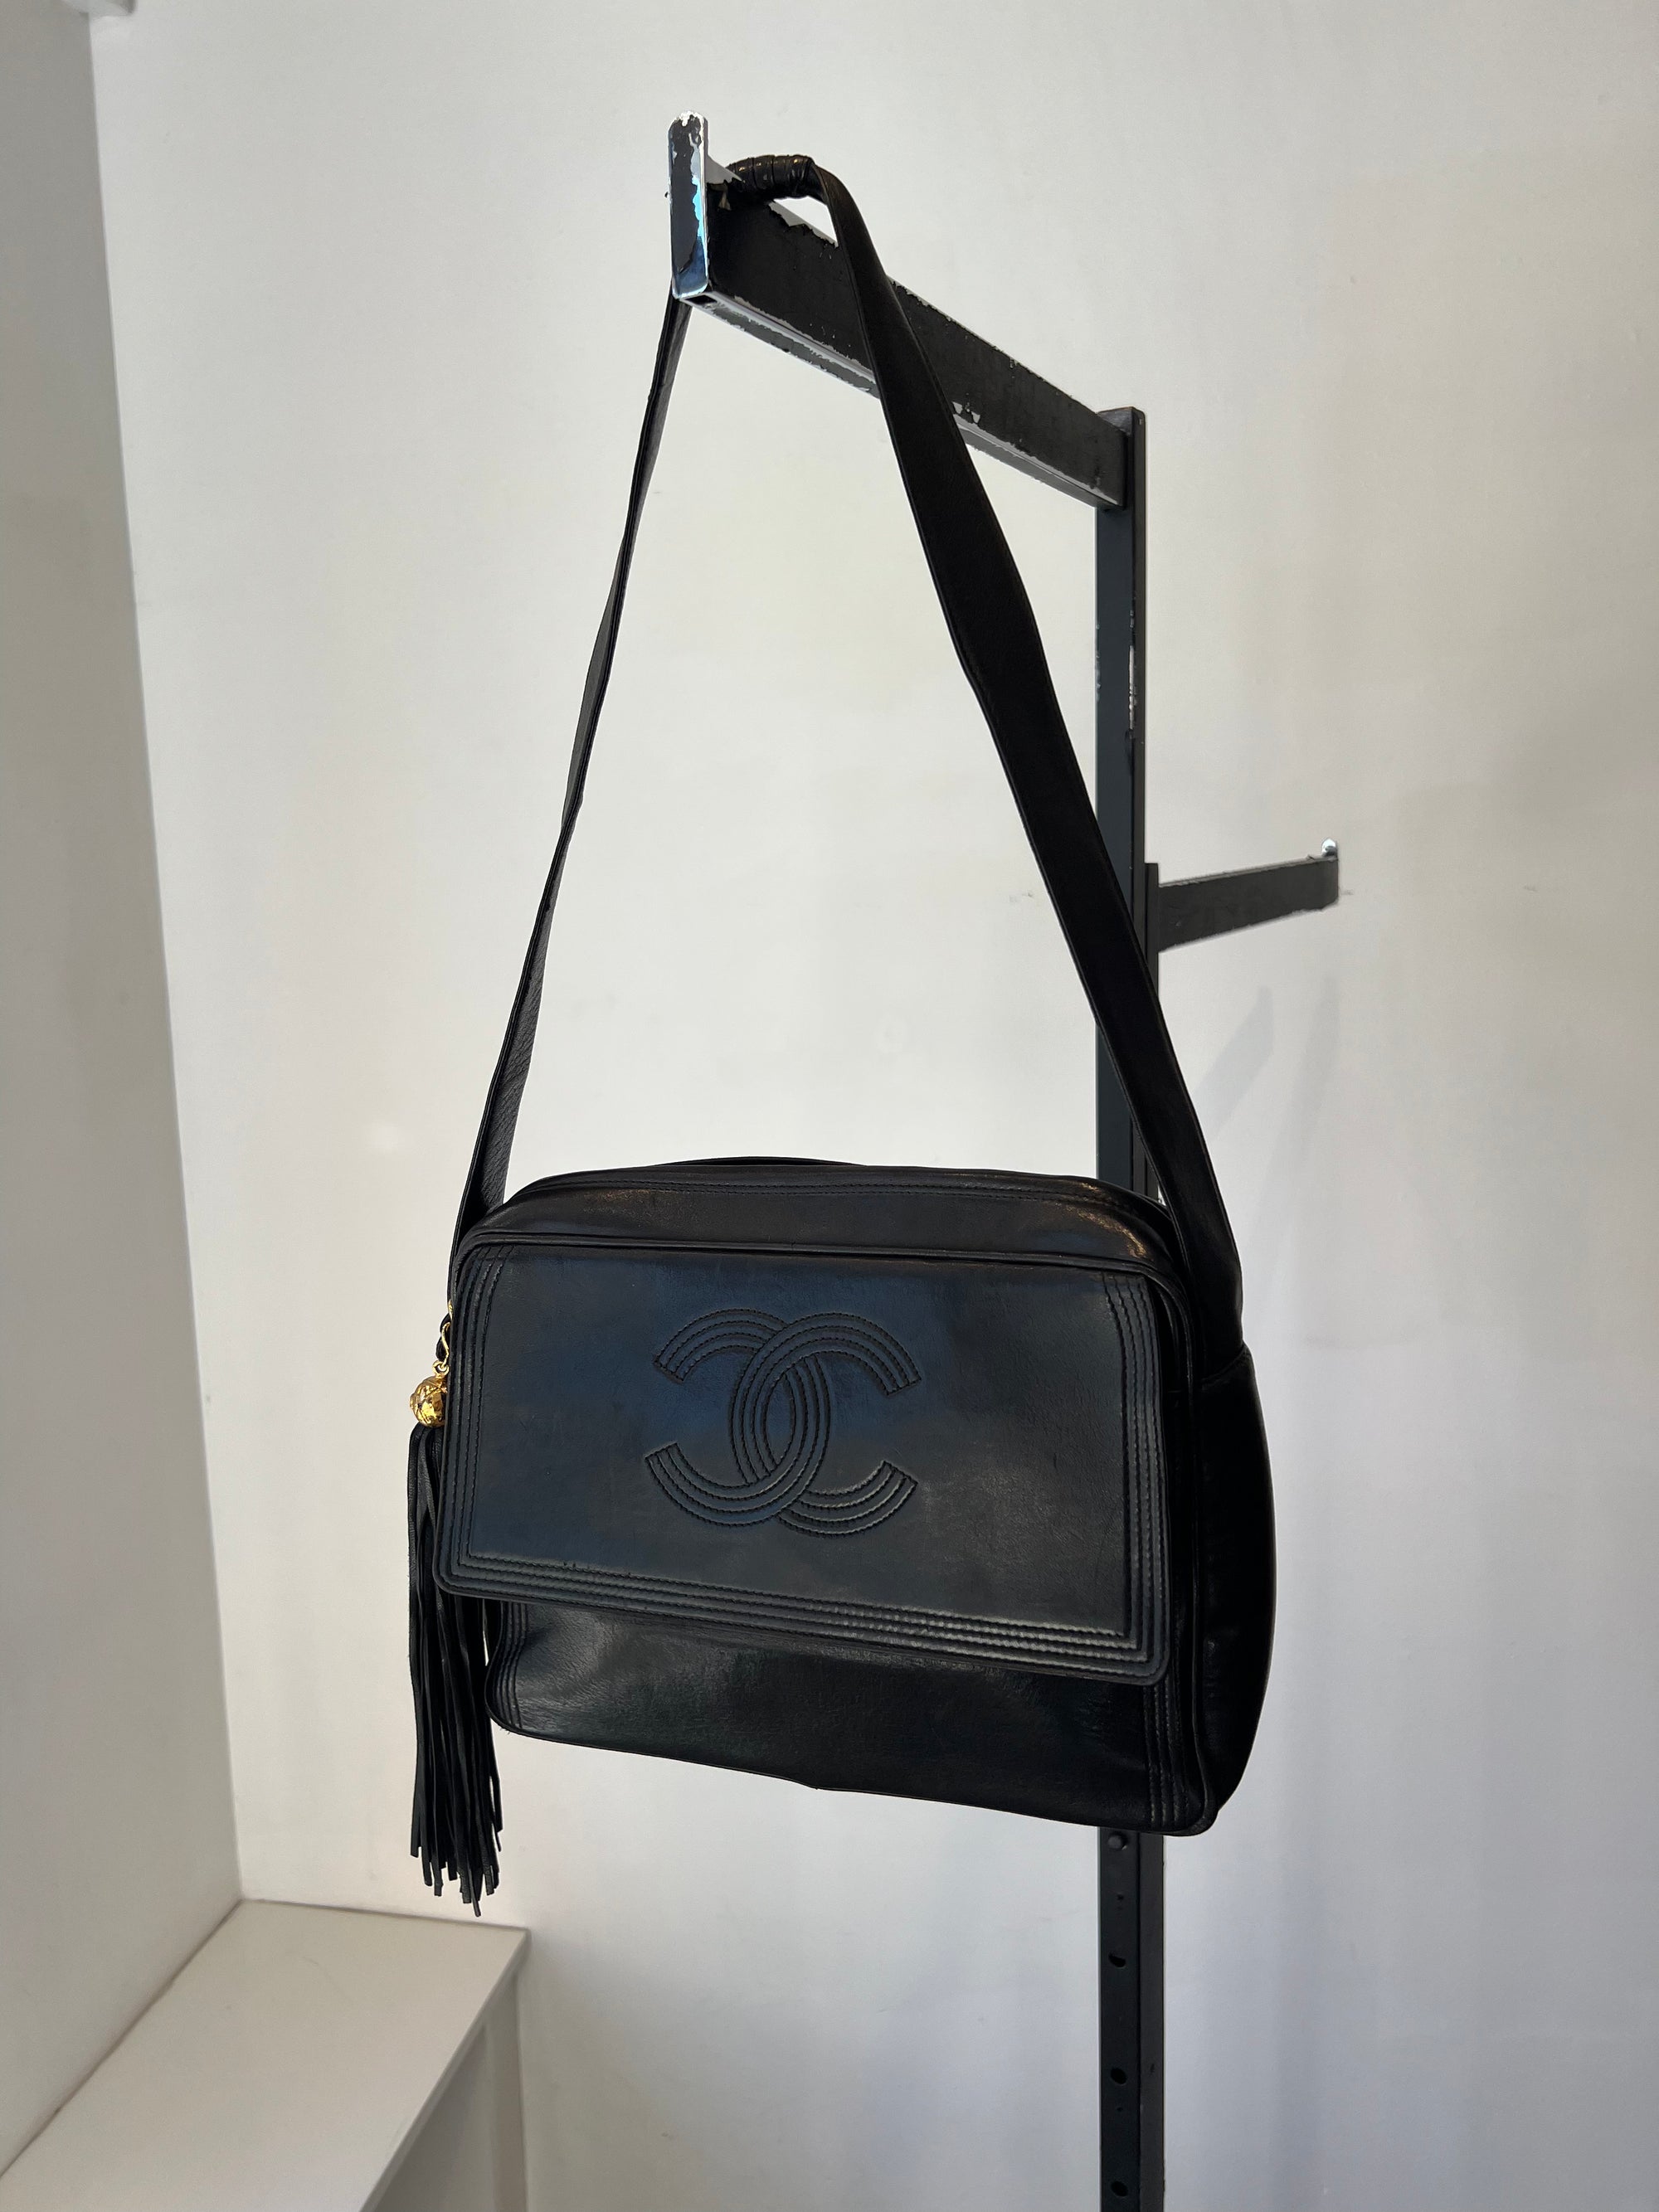 Chanel Black Vintage Flap Bag with Tassel